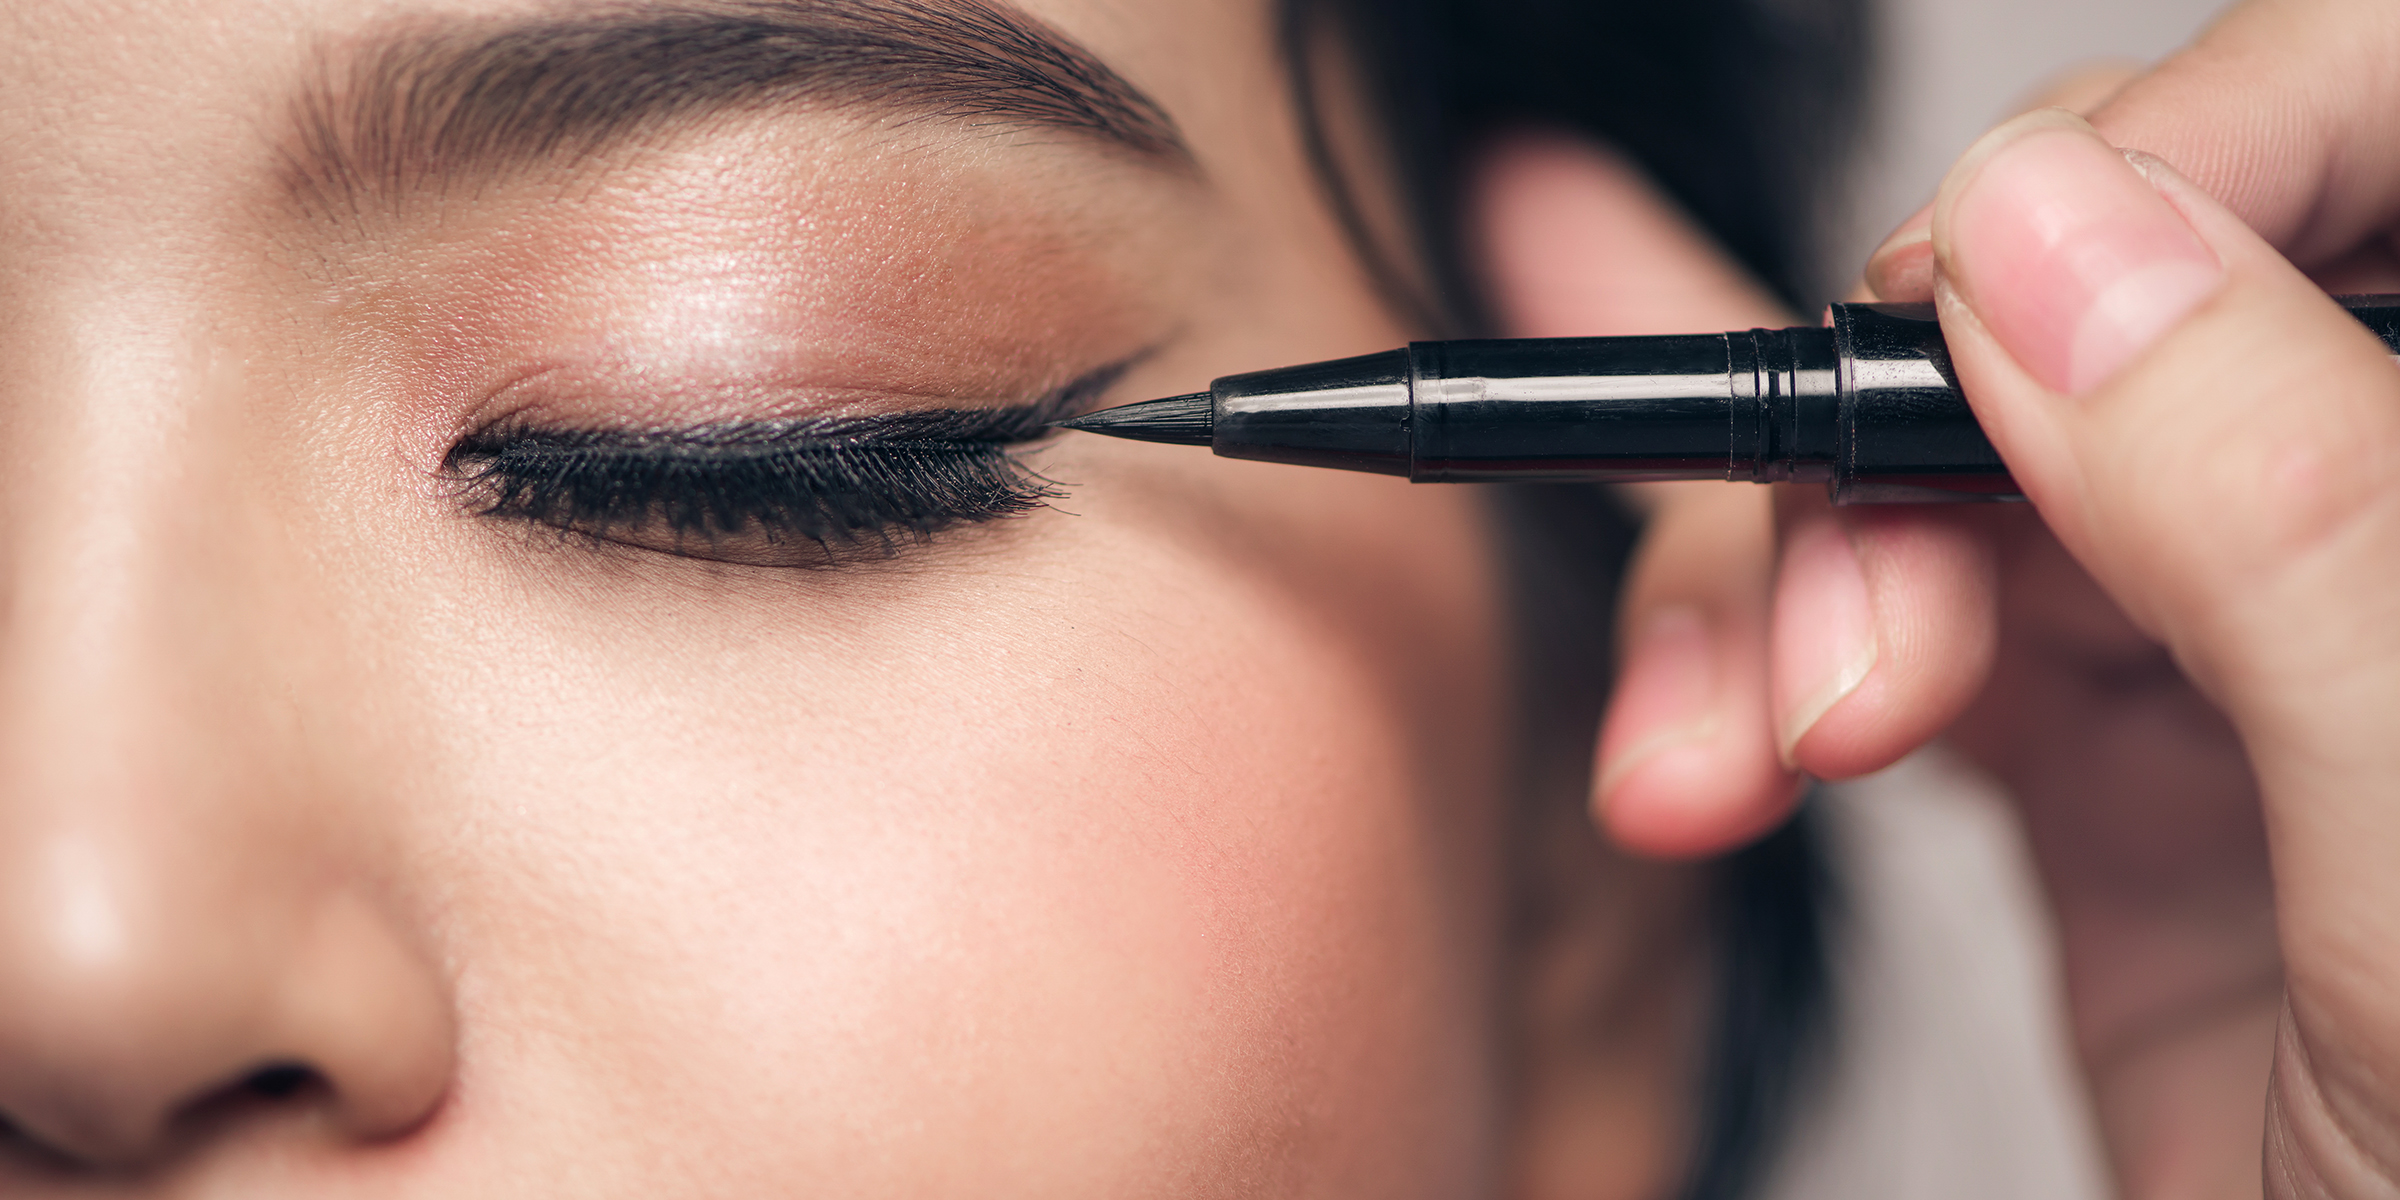 A makeup artist applies eyeliner to a woman's eyelid. | Source: Shutterstock